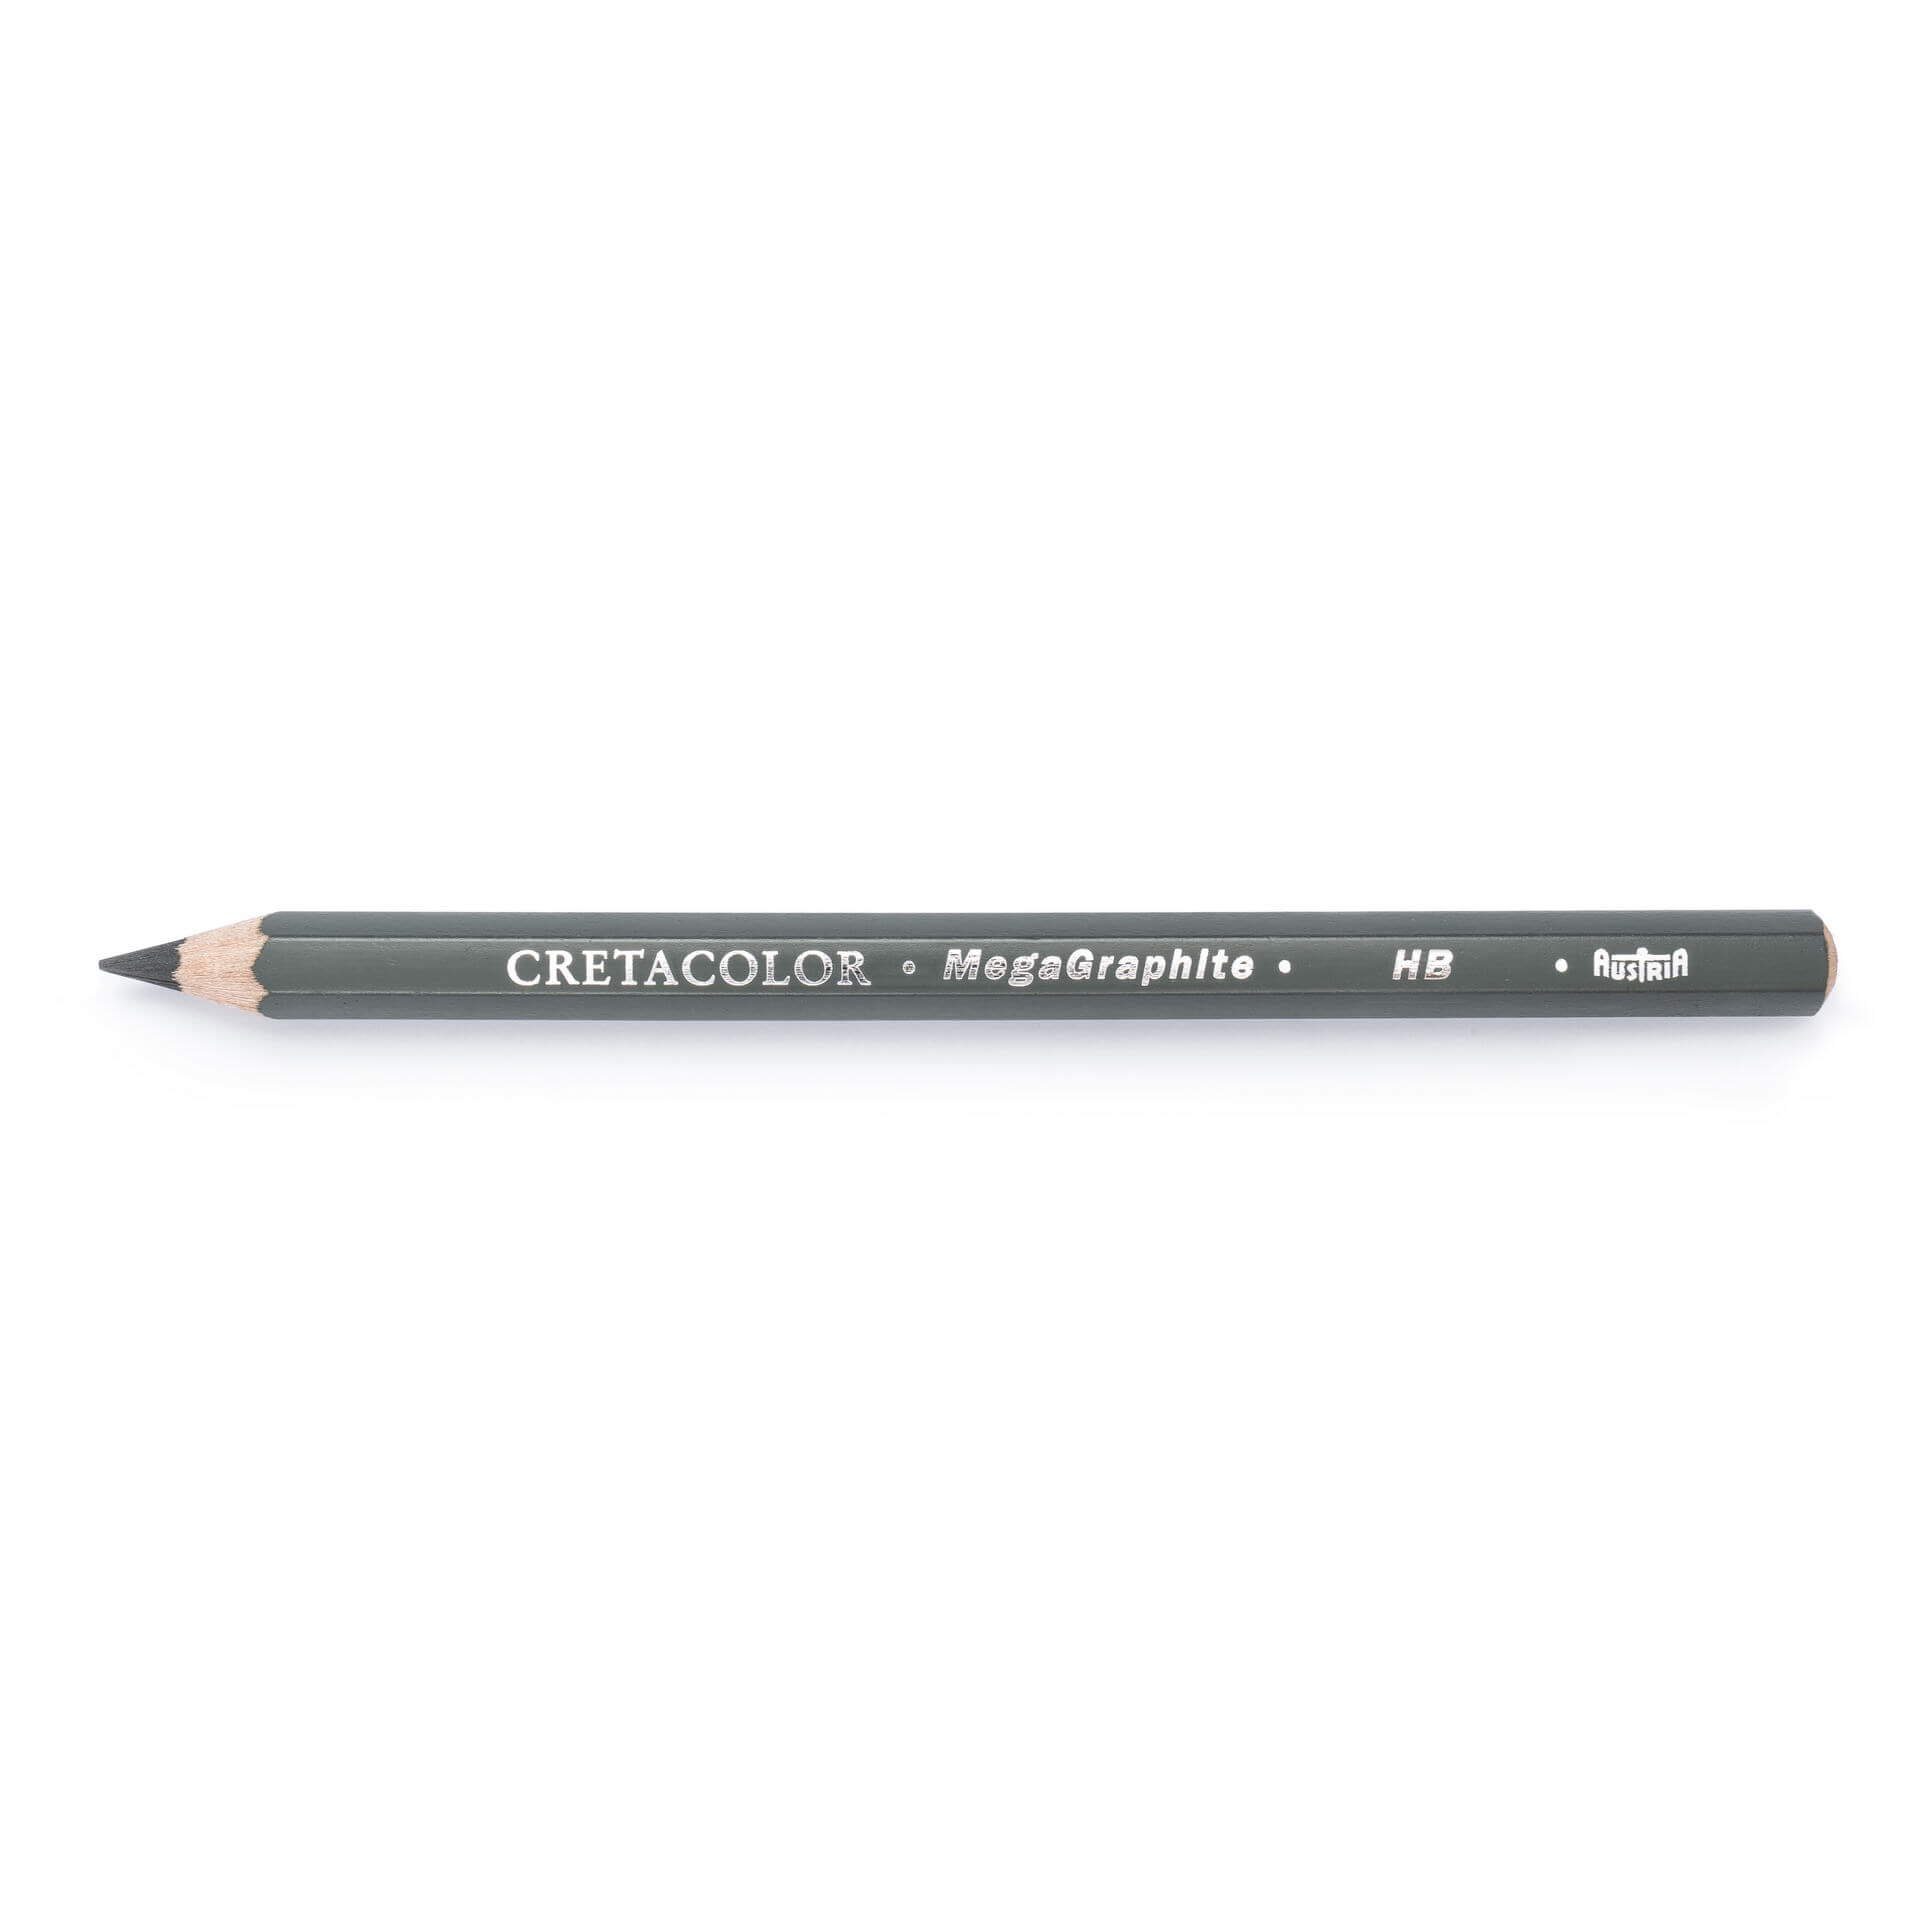 Zeichnen Bleistift 341 in 42er, Made MegaGraphit - Cretacolor 00, Skizzieren Perfekt zum Austria und Brevilliers